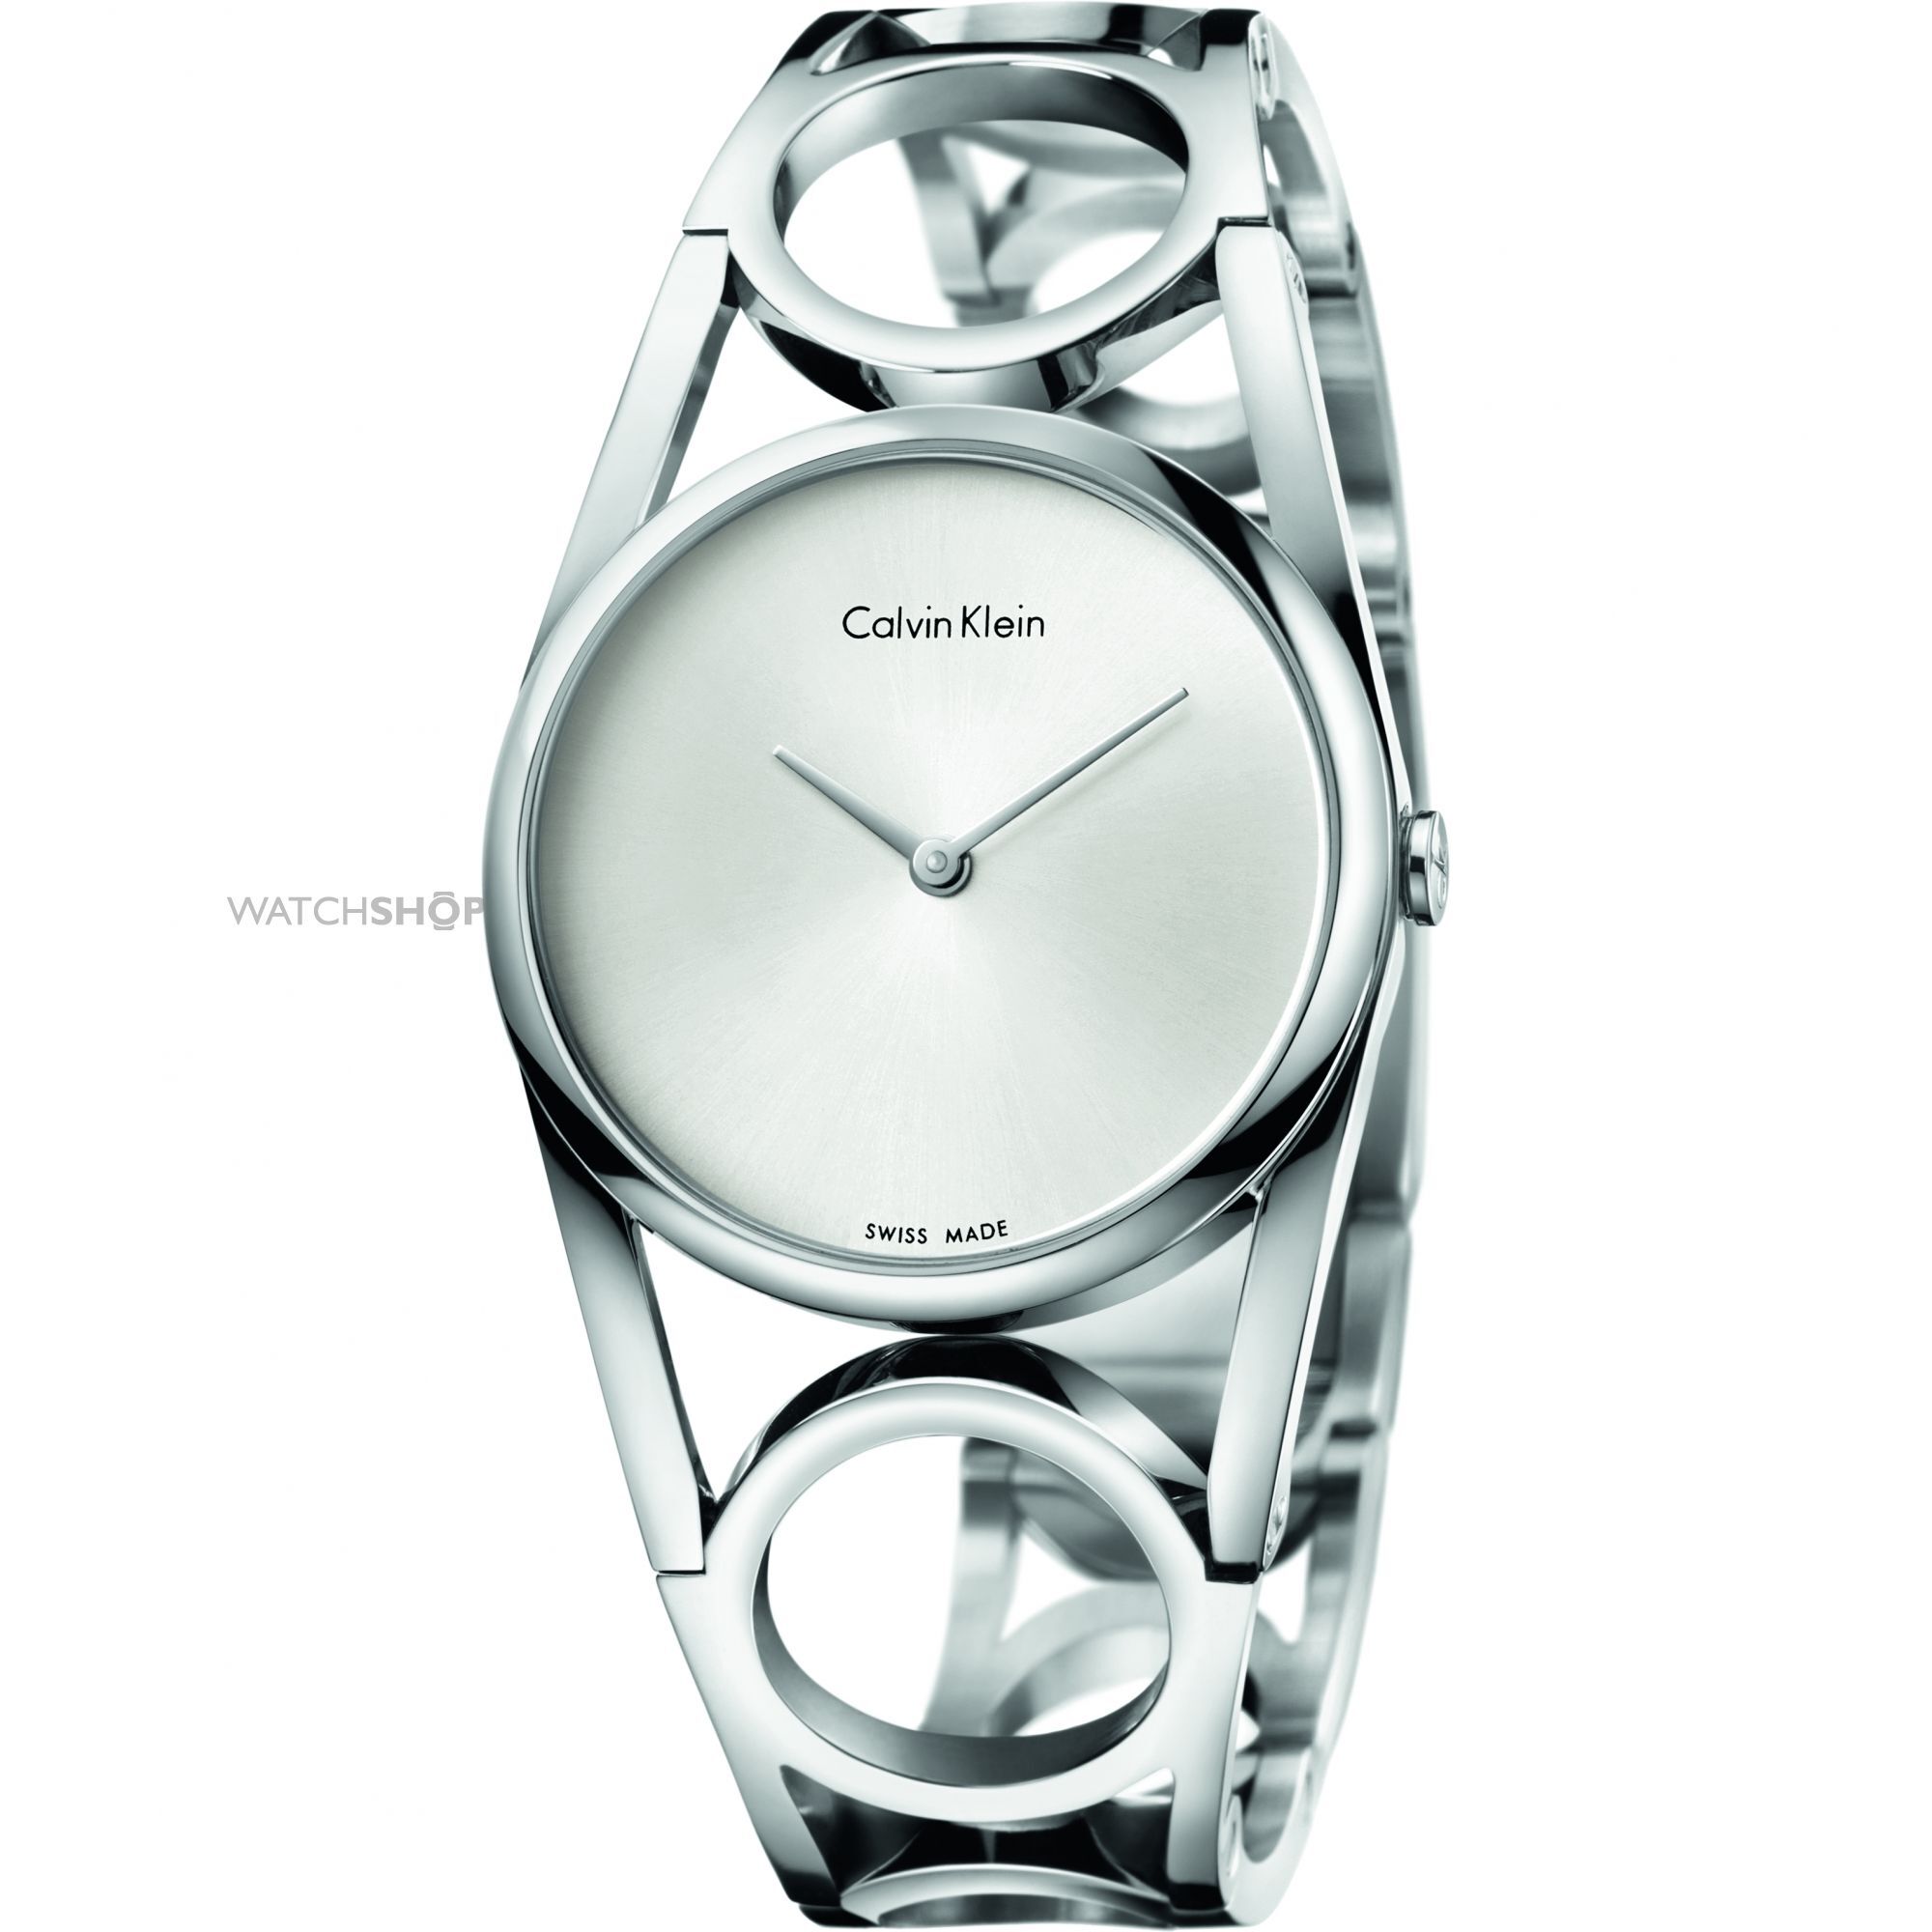 Đồng hồ kim nữ Calvin Klein K5U2M146